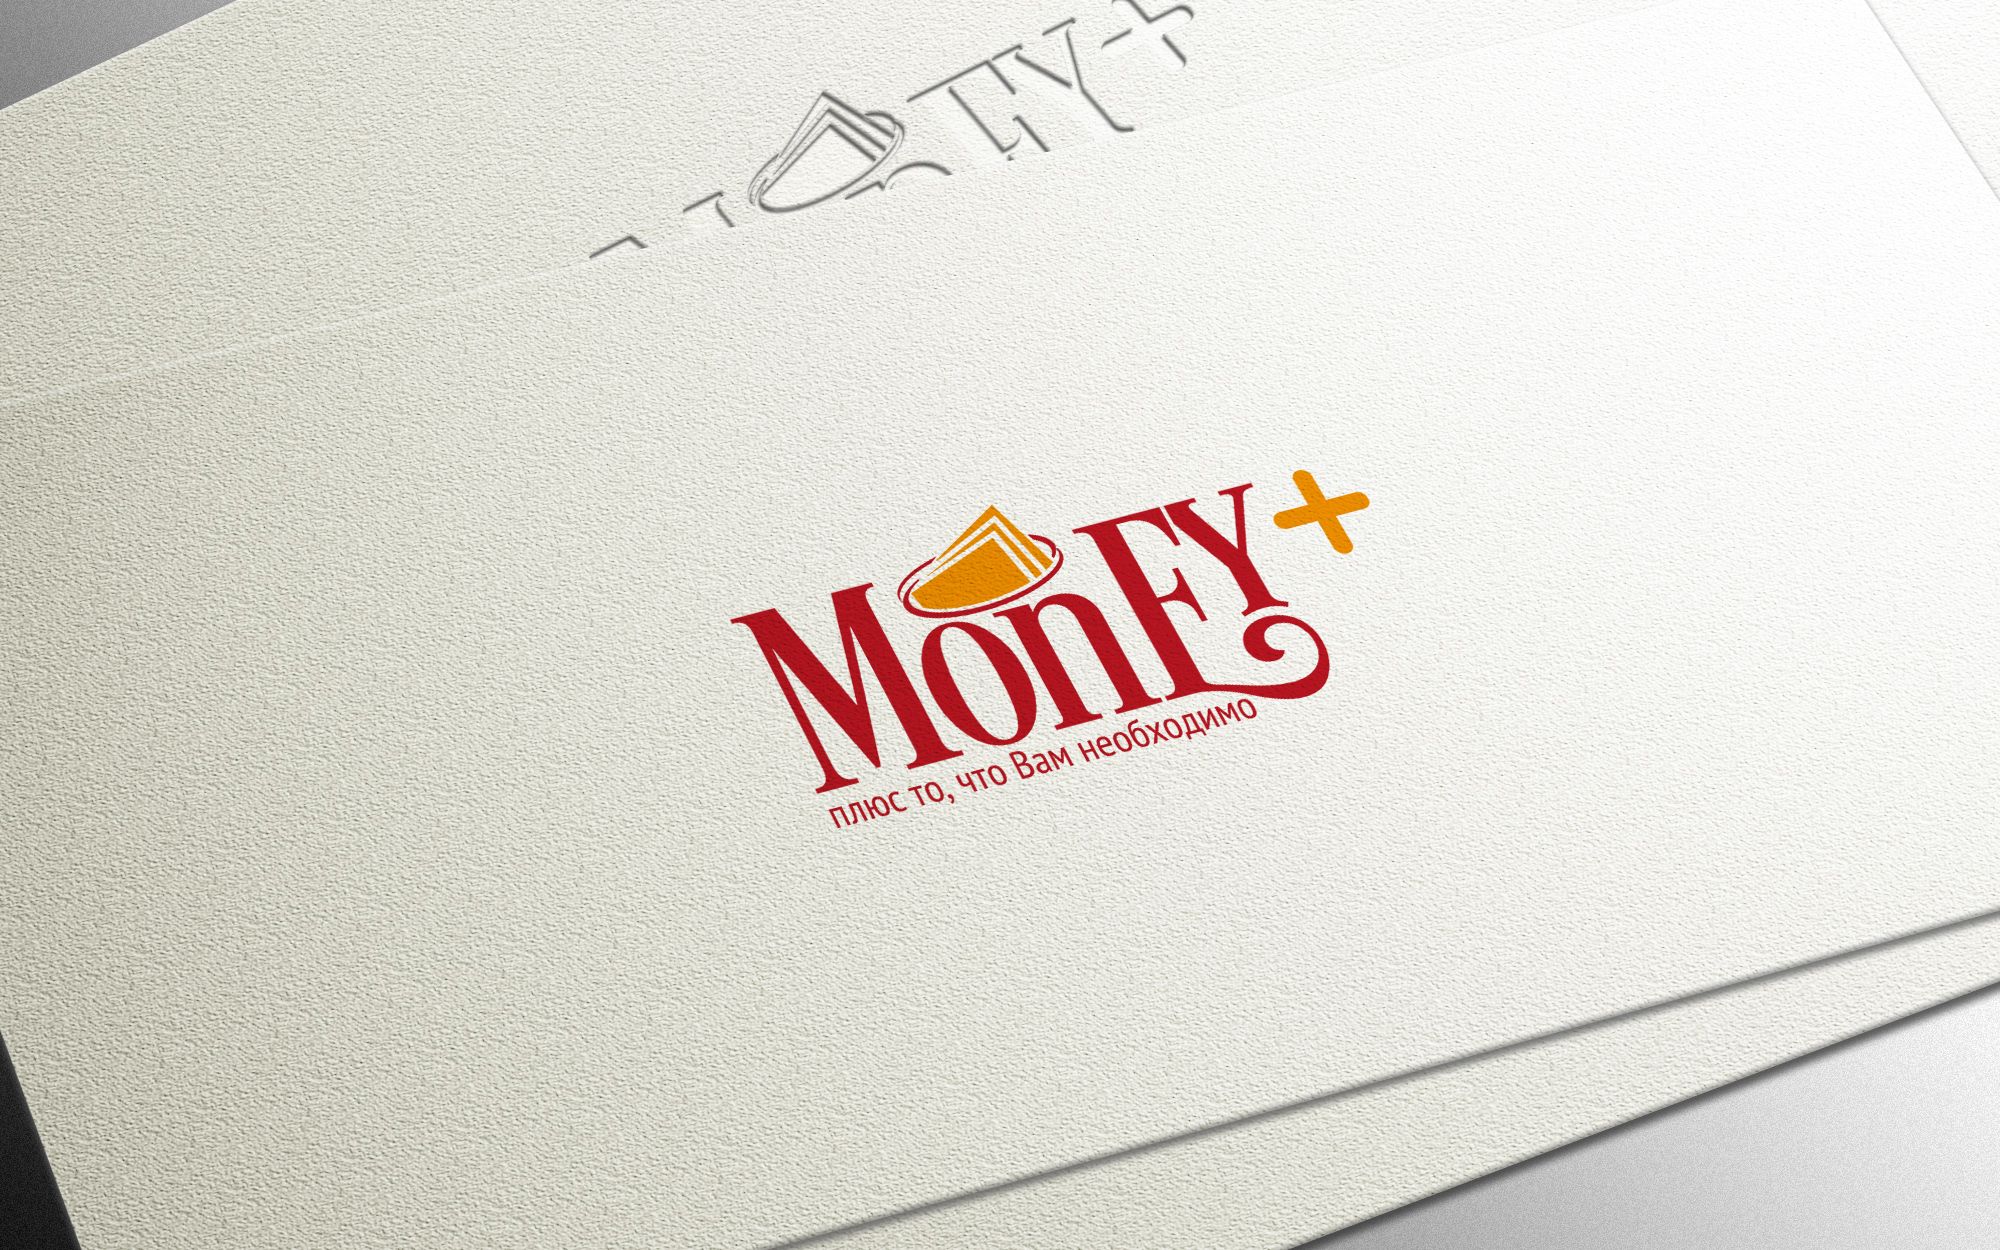 Лого и ФС для Money+   - дизайнер Gas-Min